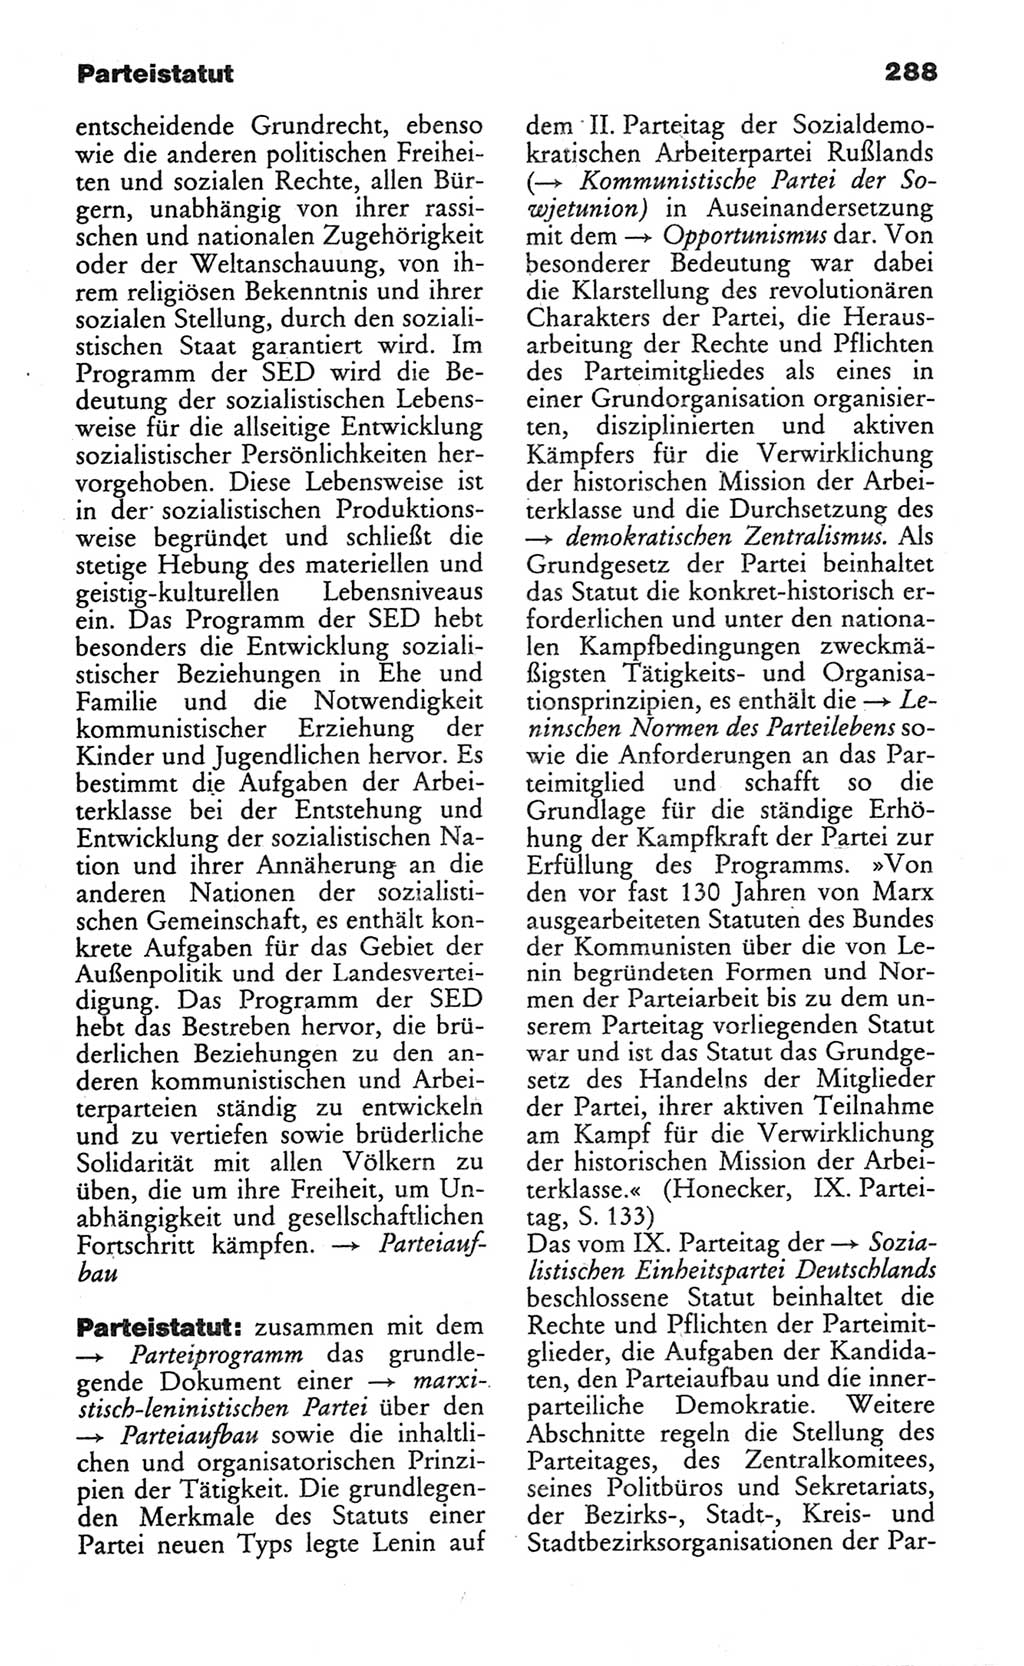 Wörterbuch des wissenschaftlichen Kommunismus [Deutsche Demokratische Republik (DDR)] 1982, Seite 288 (Wb. wiss. Komm. DDR 1982, S. 288)